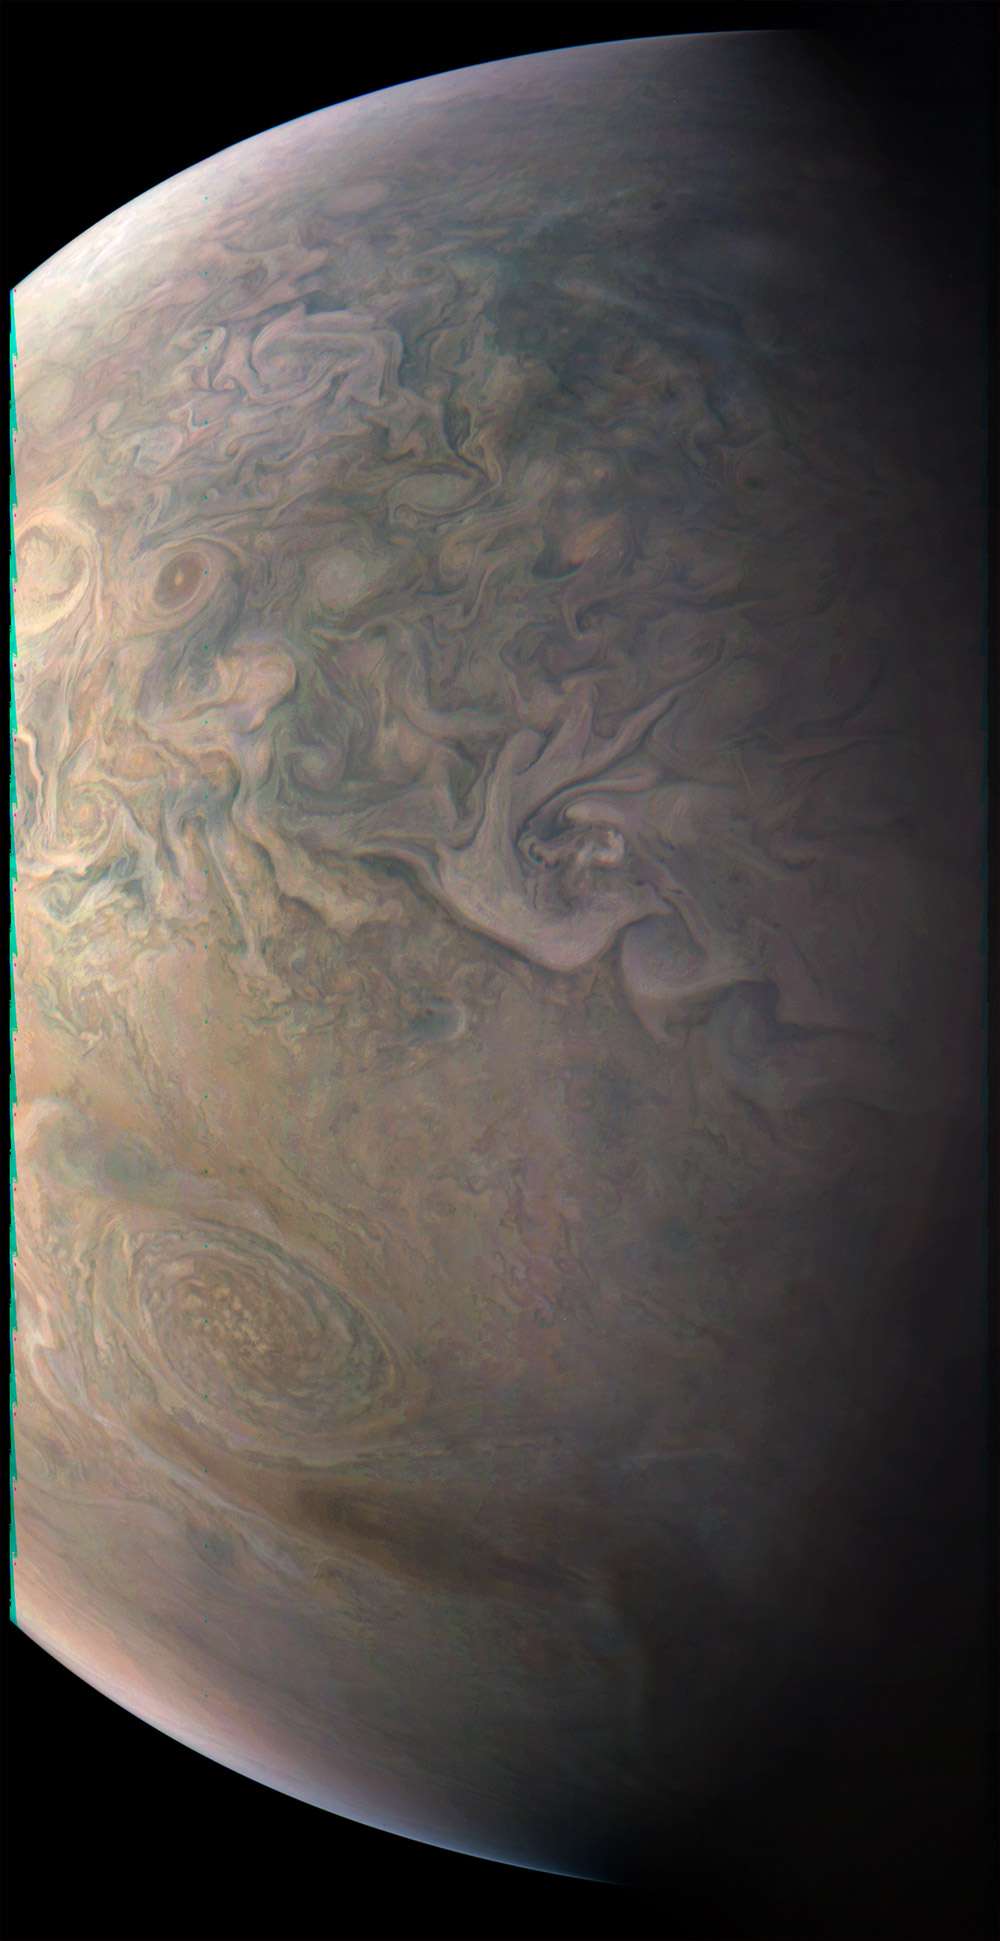 La Petite tache rouge observée par Juno. © Nasa, JPL-Caltech, SwRI, MSSS, Gerald Eichstaedt, John Rogers